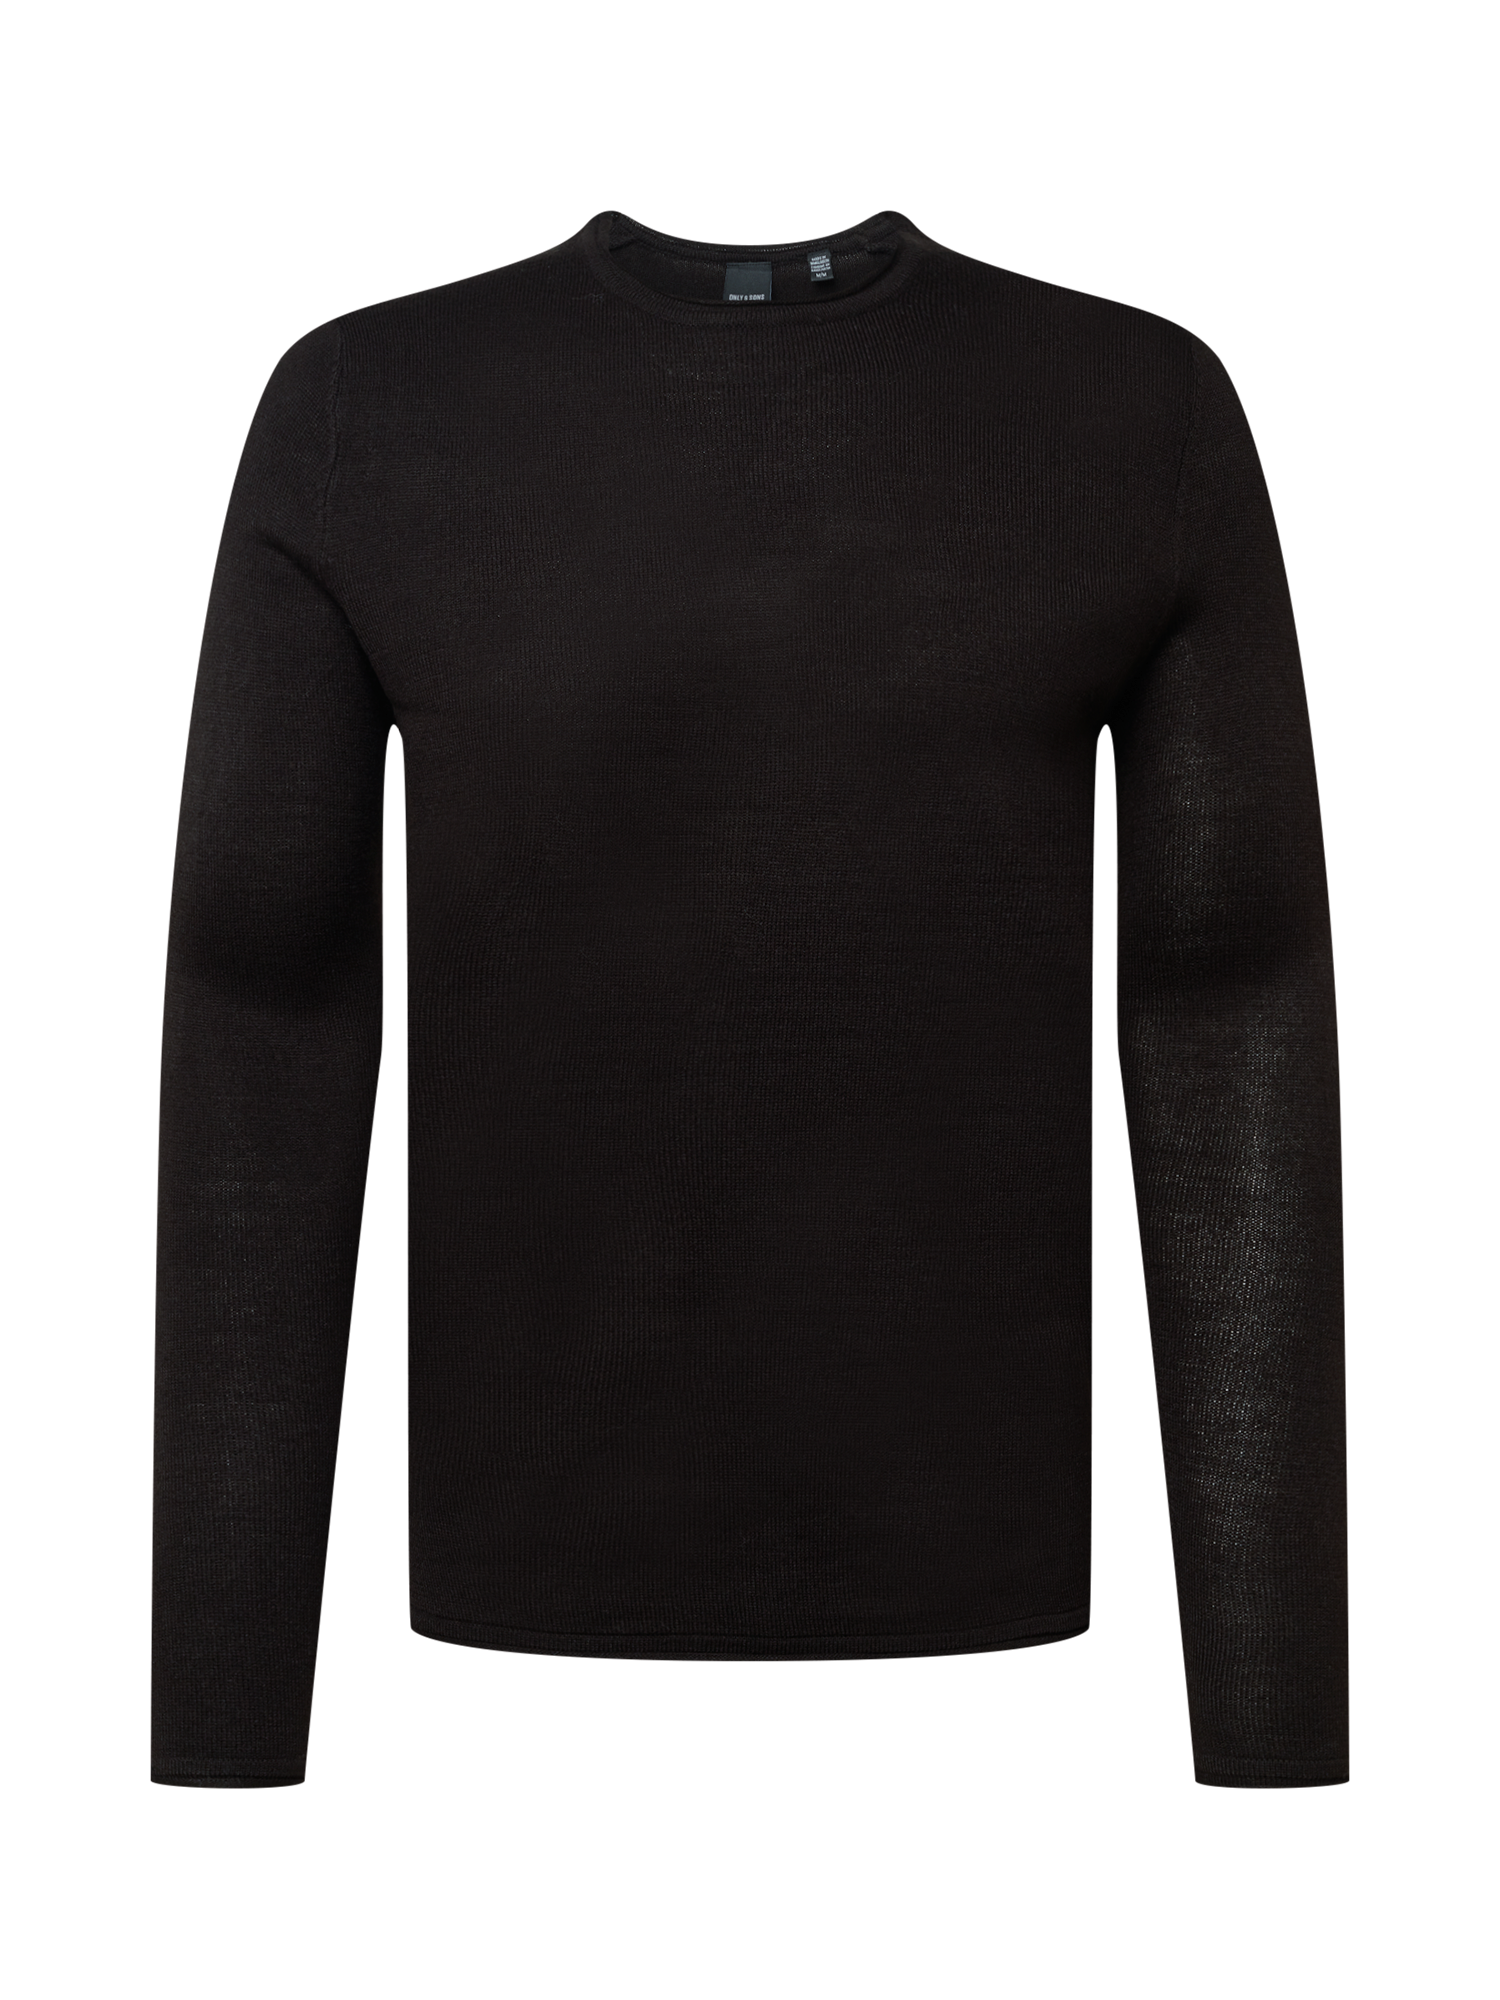 Swetry Mężczyźni Only & Sons Sweter LARSON w kolorze Czarnym 